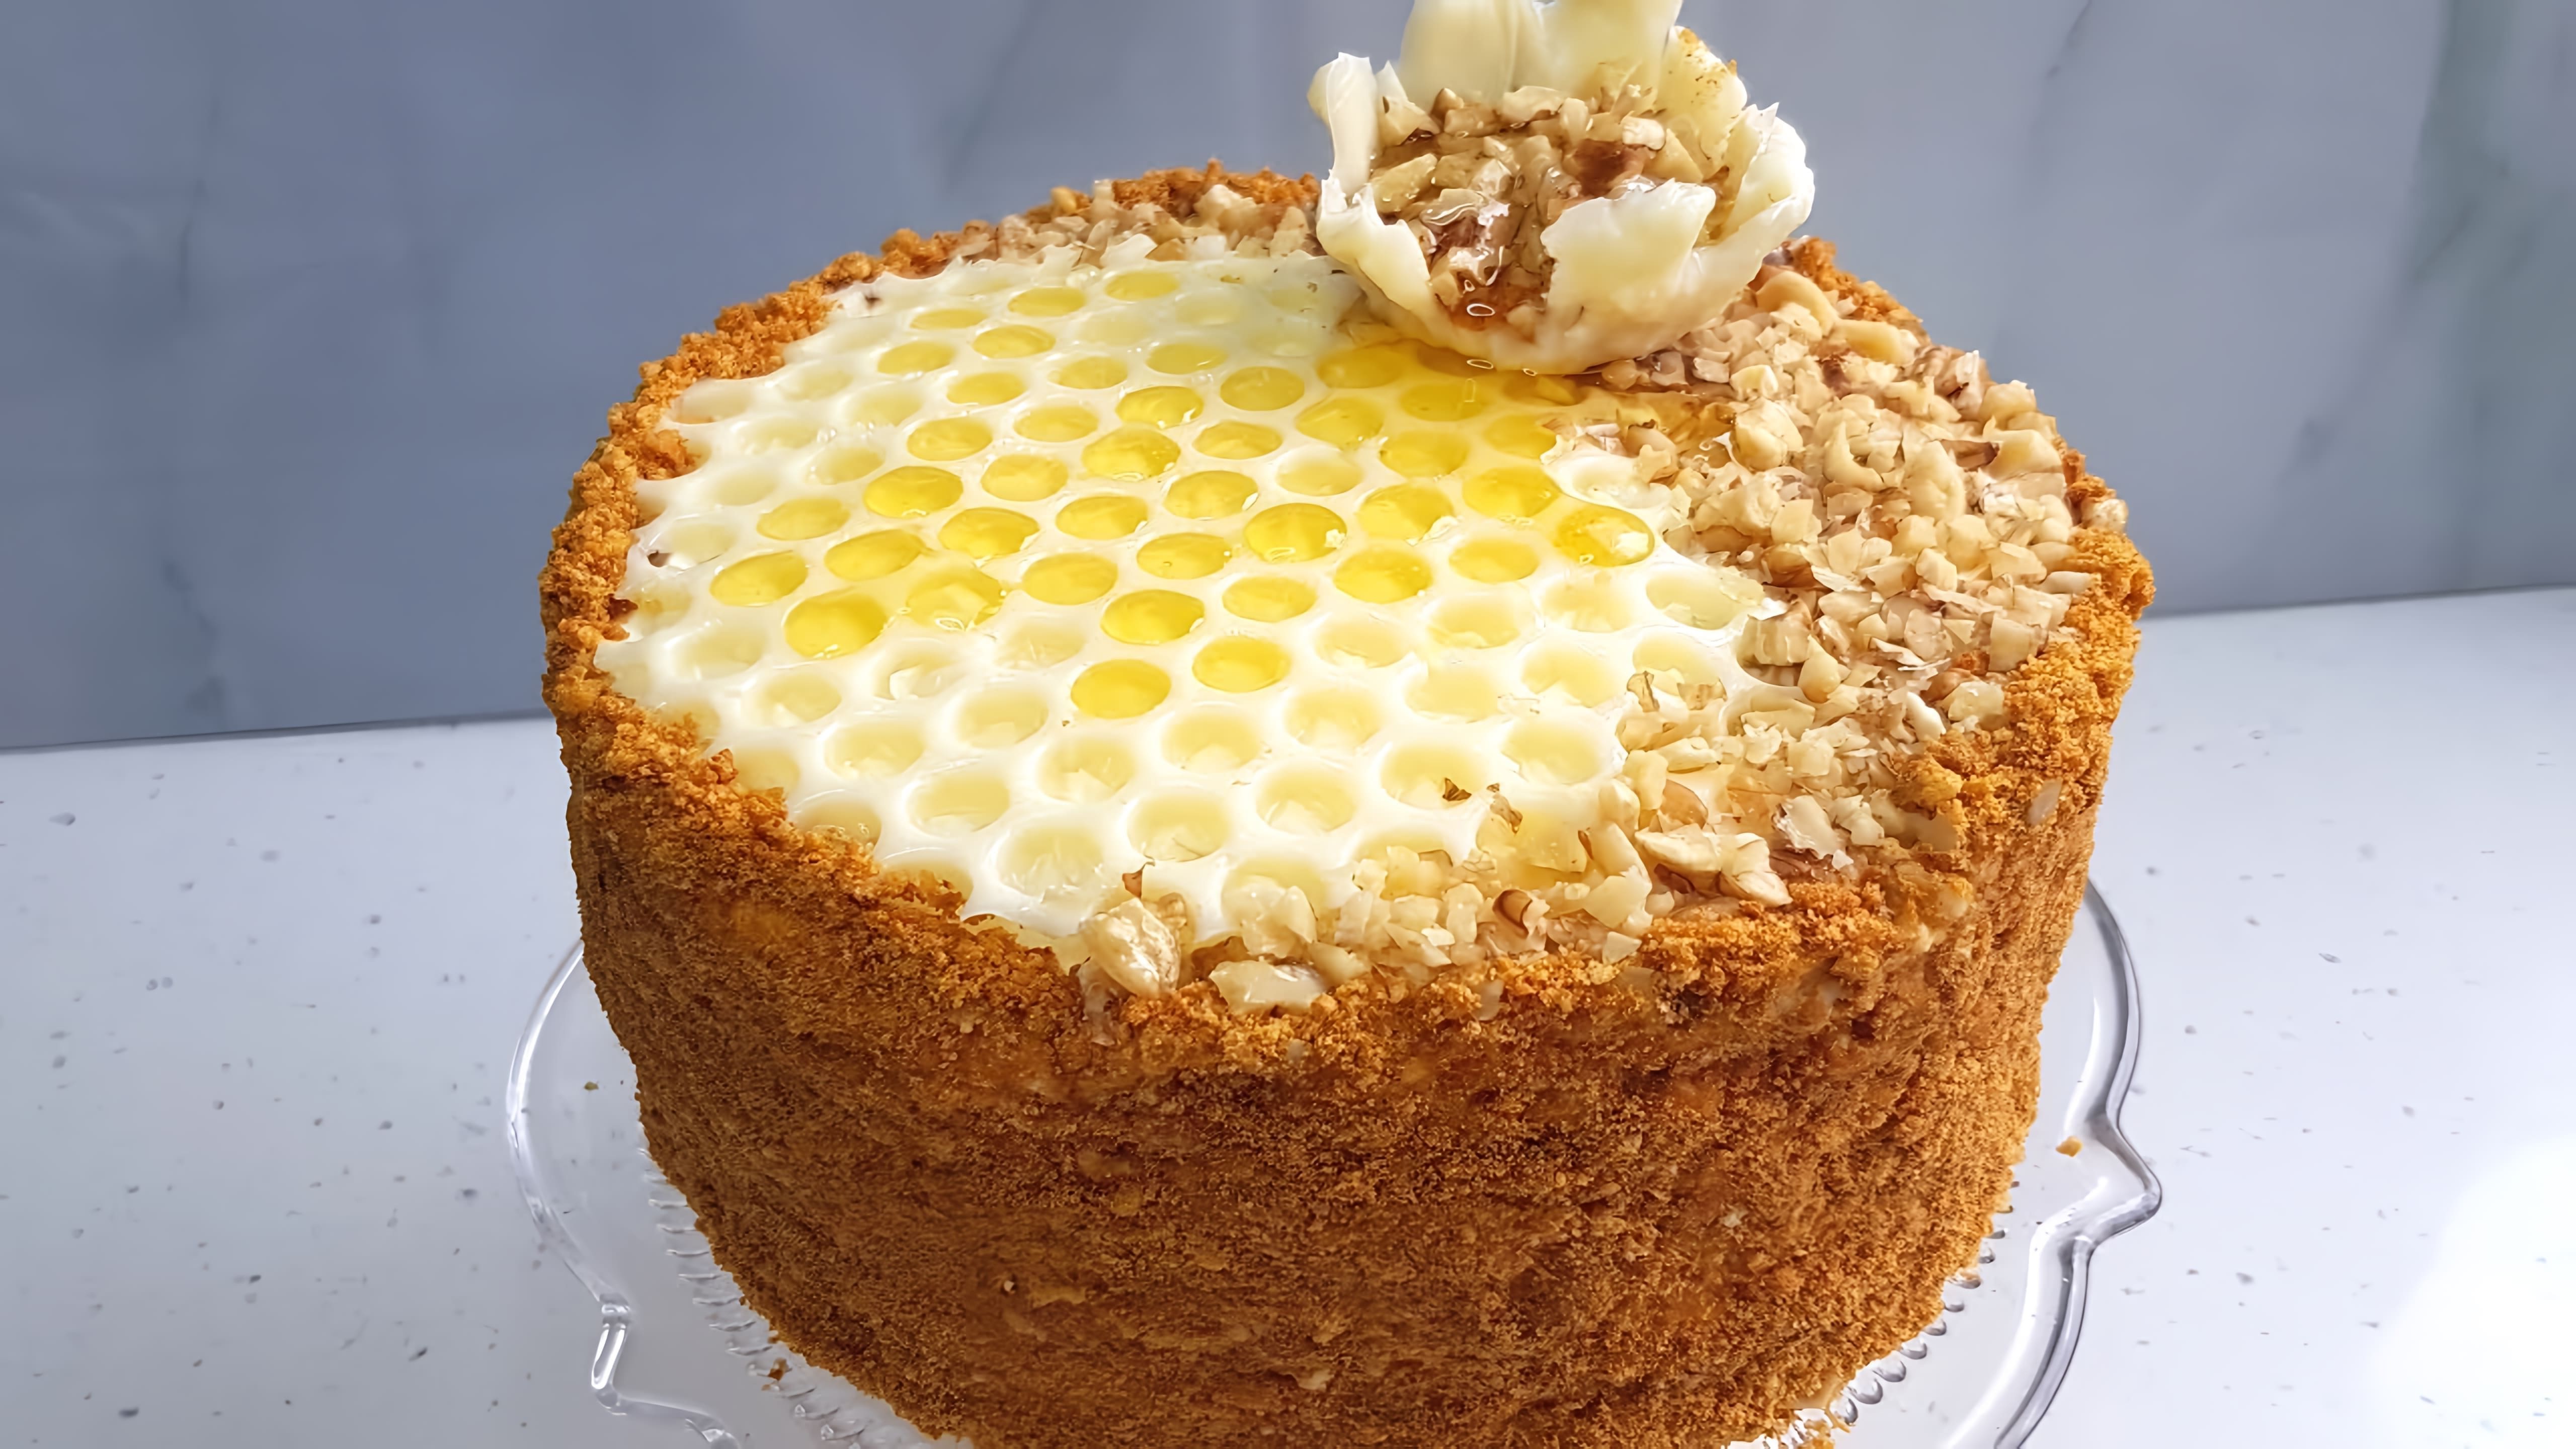 В этом видео демонстрируется рецепт приготовления торта "Медовик" с мягкими коржами, пропитанными сметанным кремом